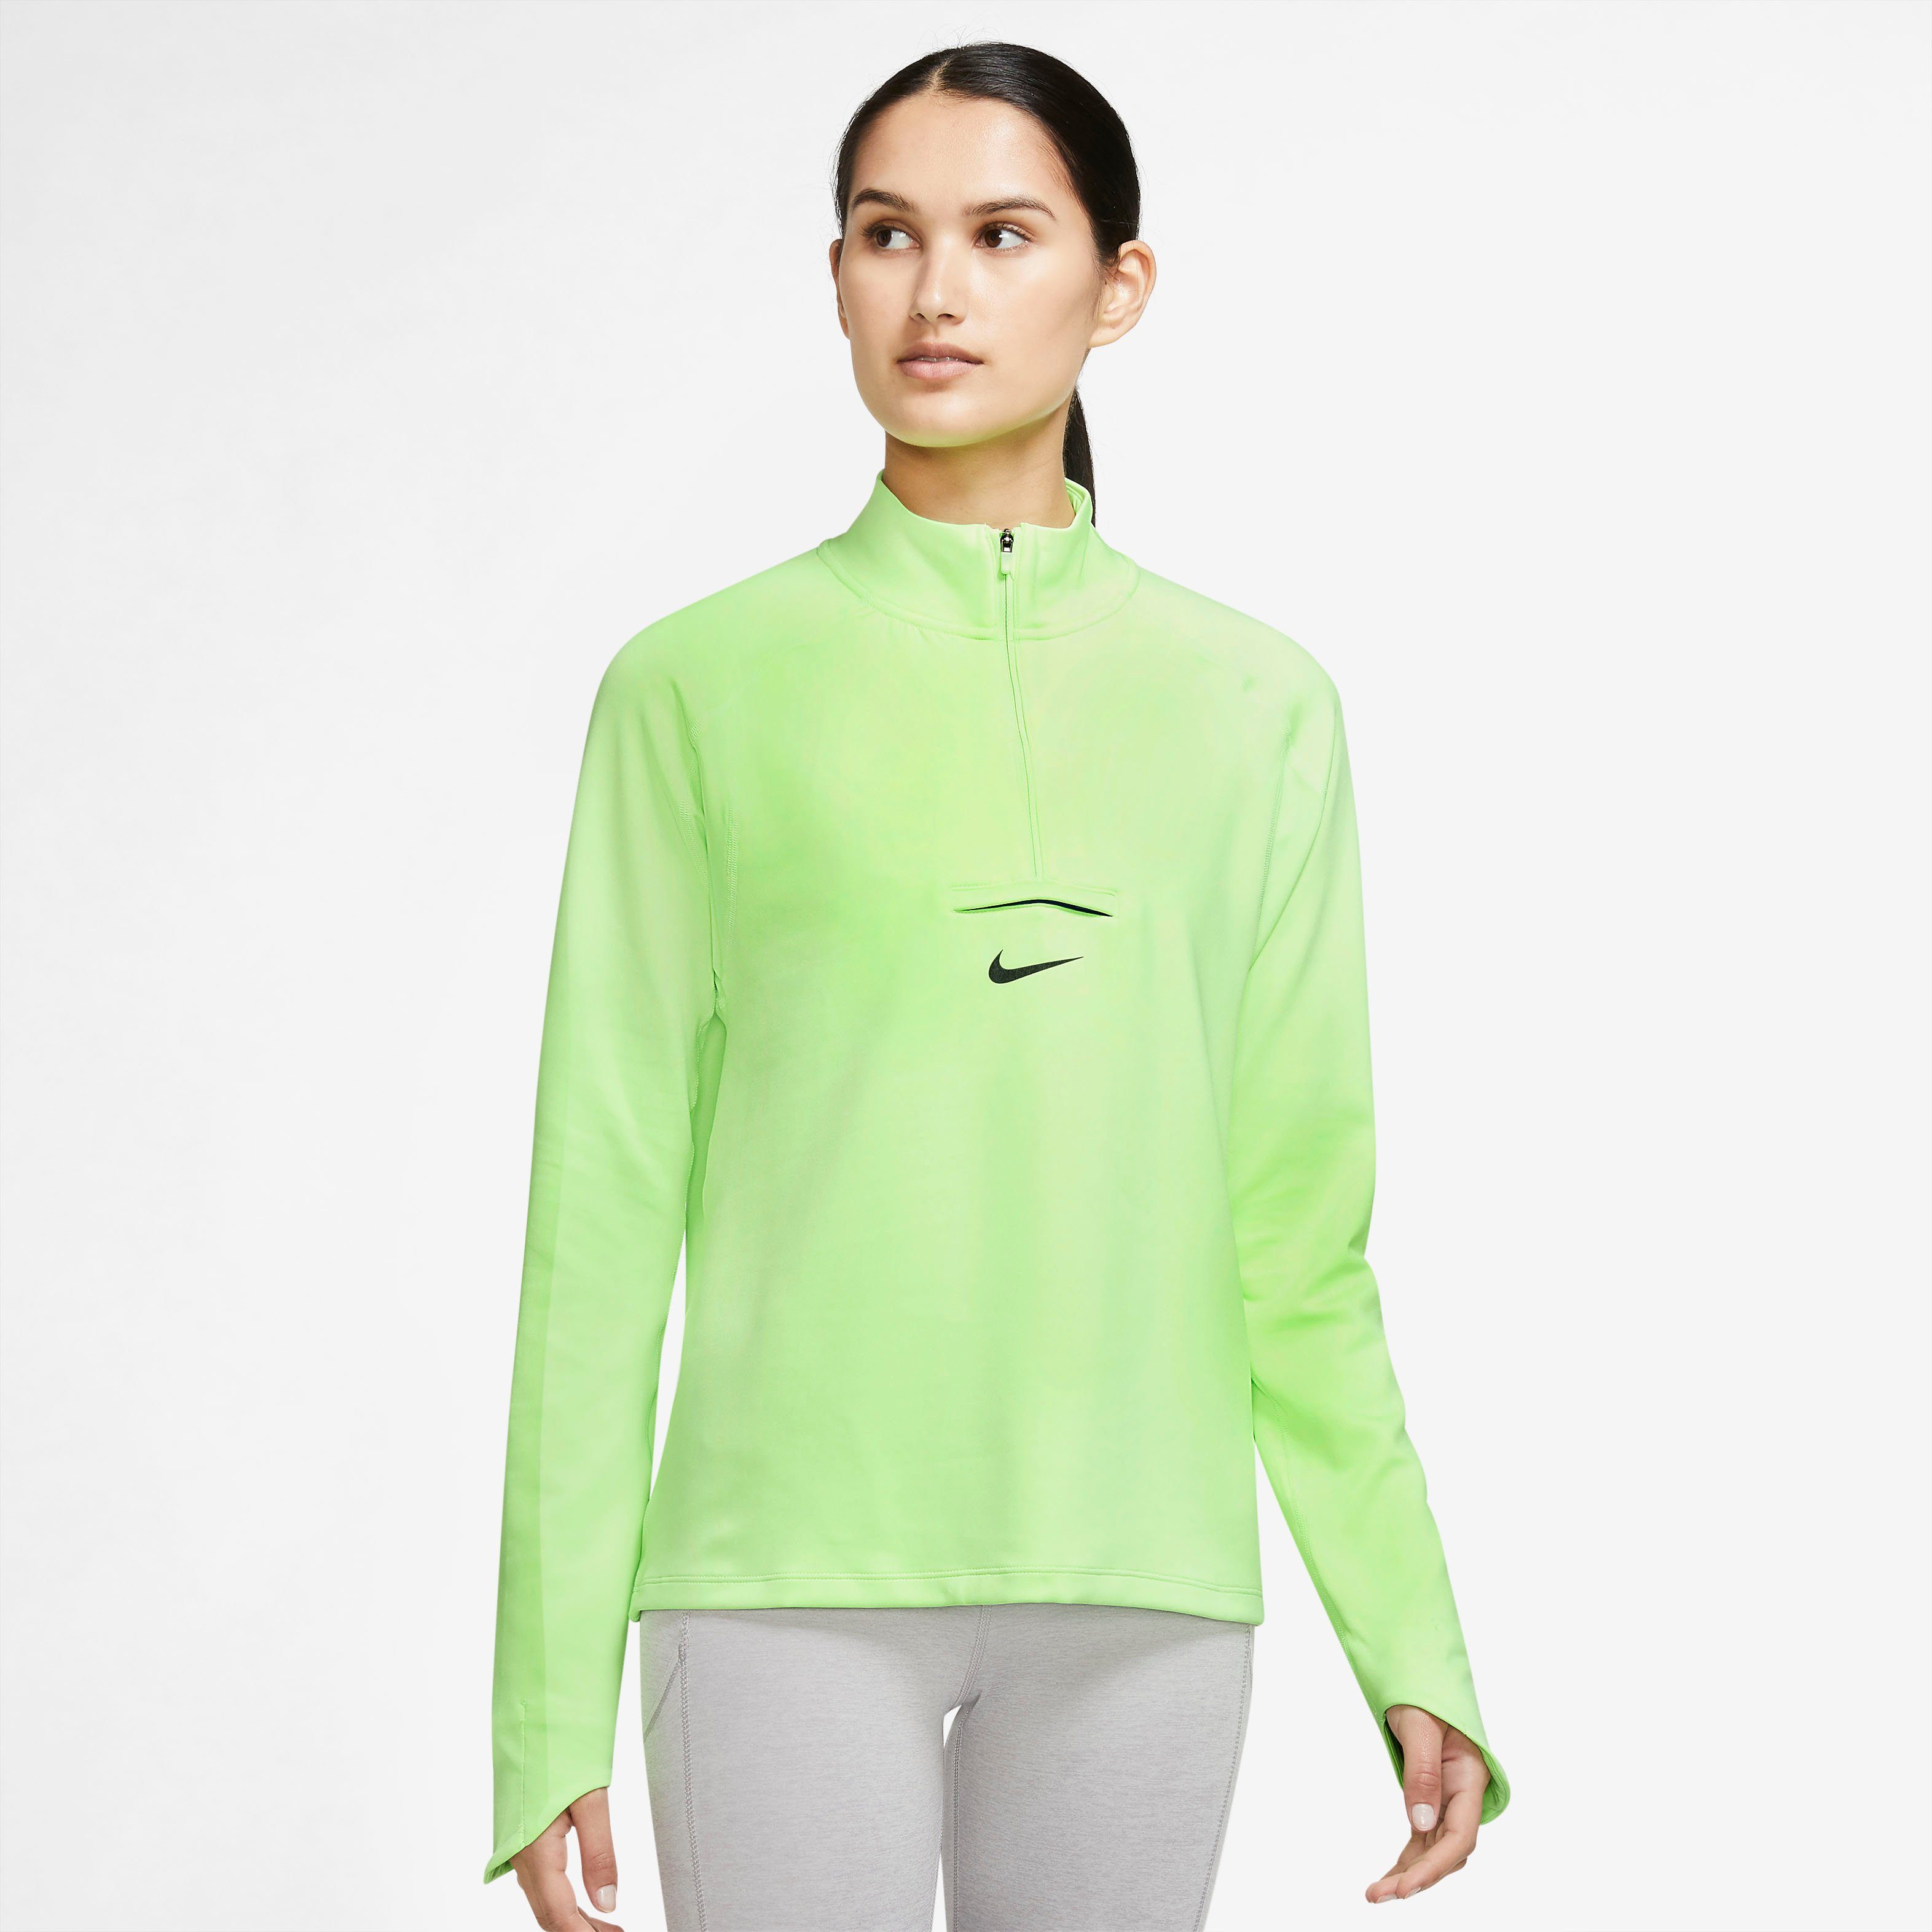 Nike Laufshirts online kaufen | OTTO